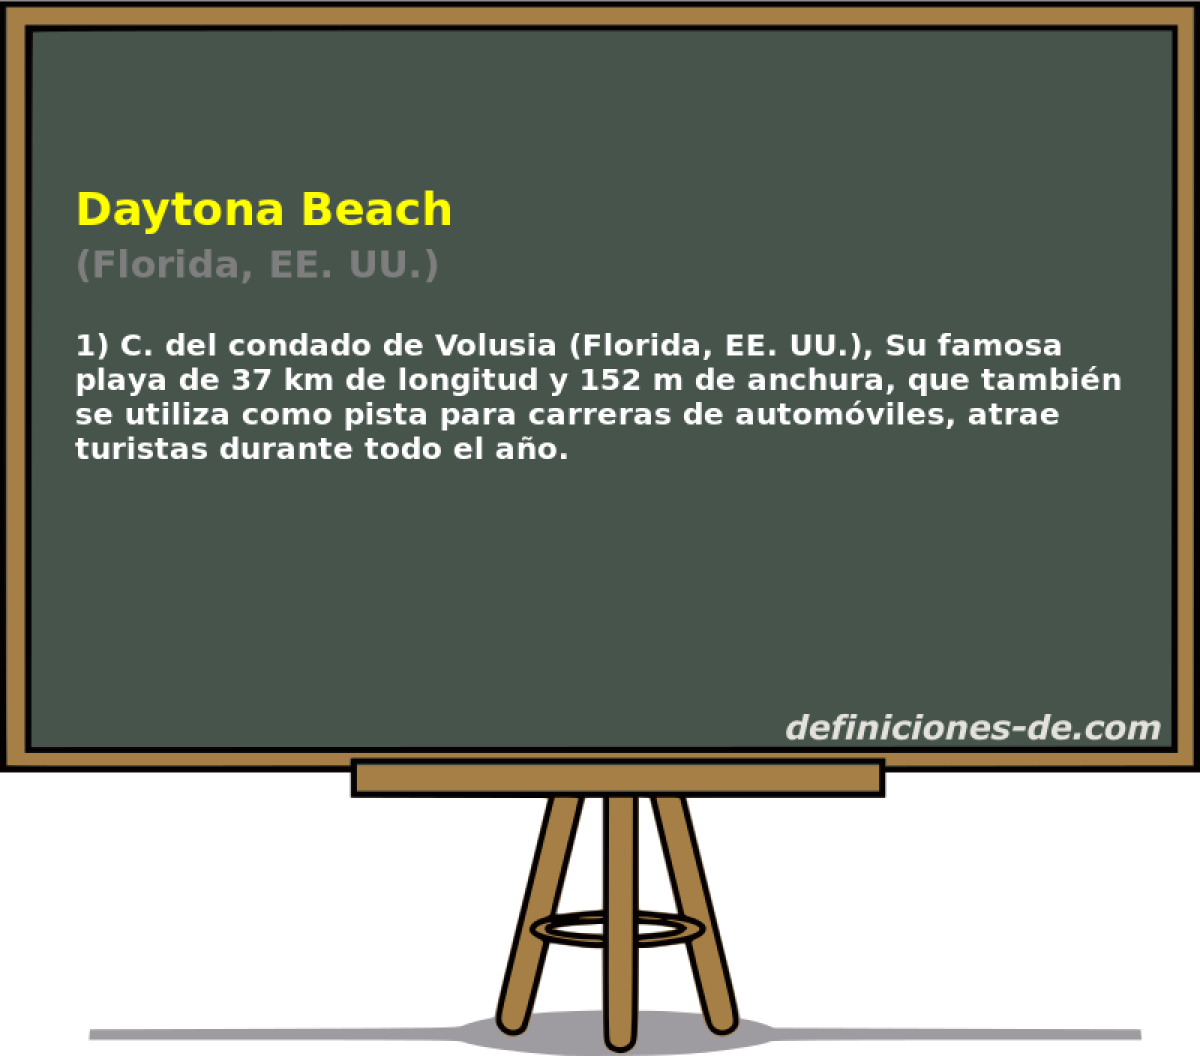 Daytona Beach (Florida, EE. UU.)